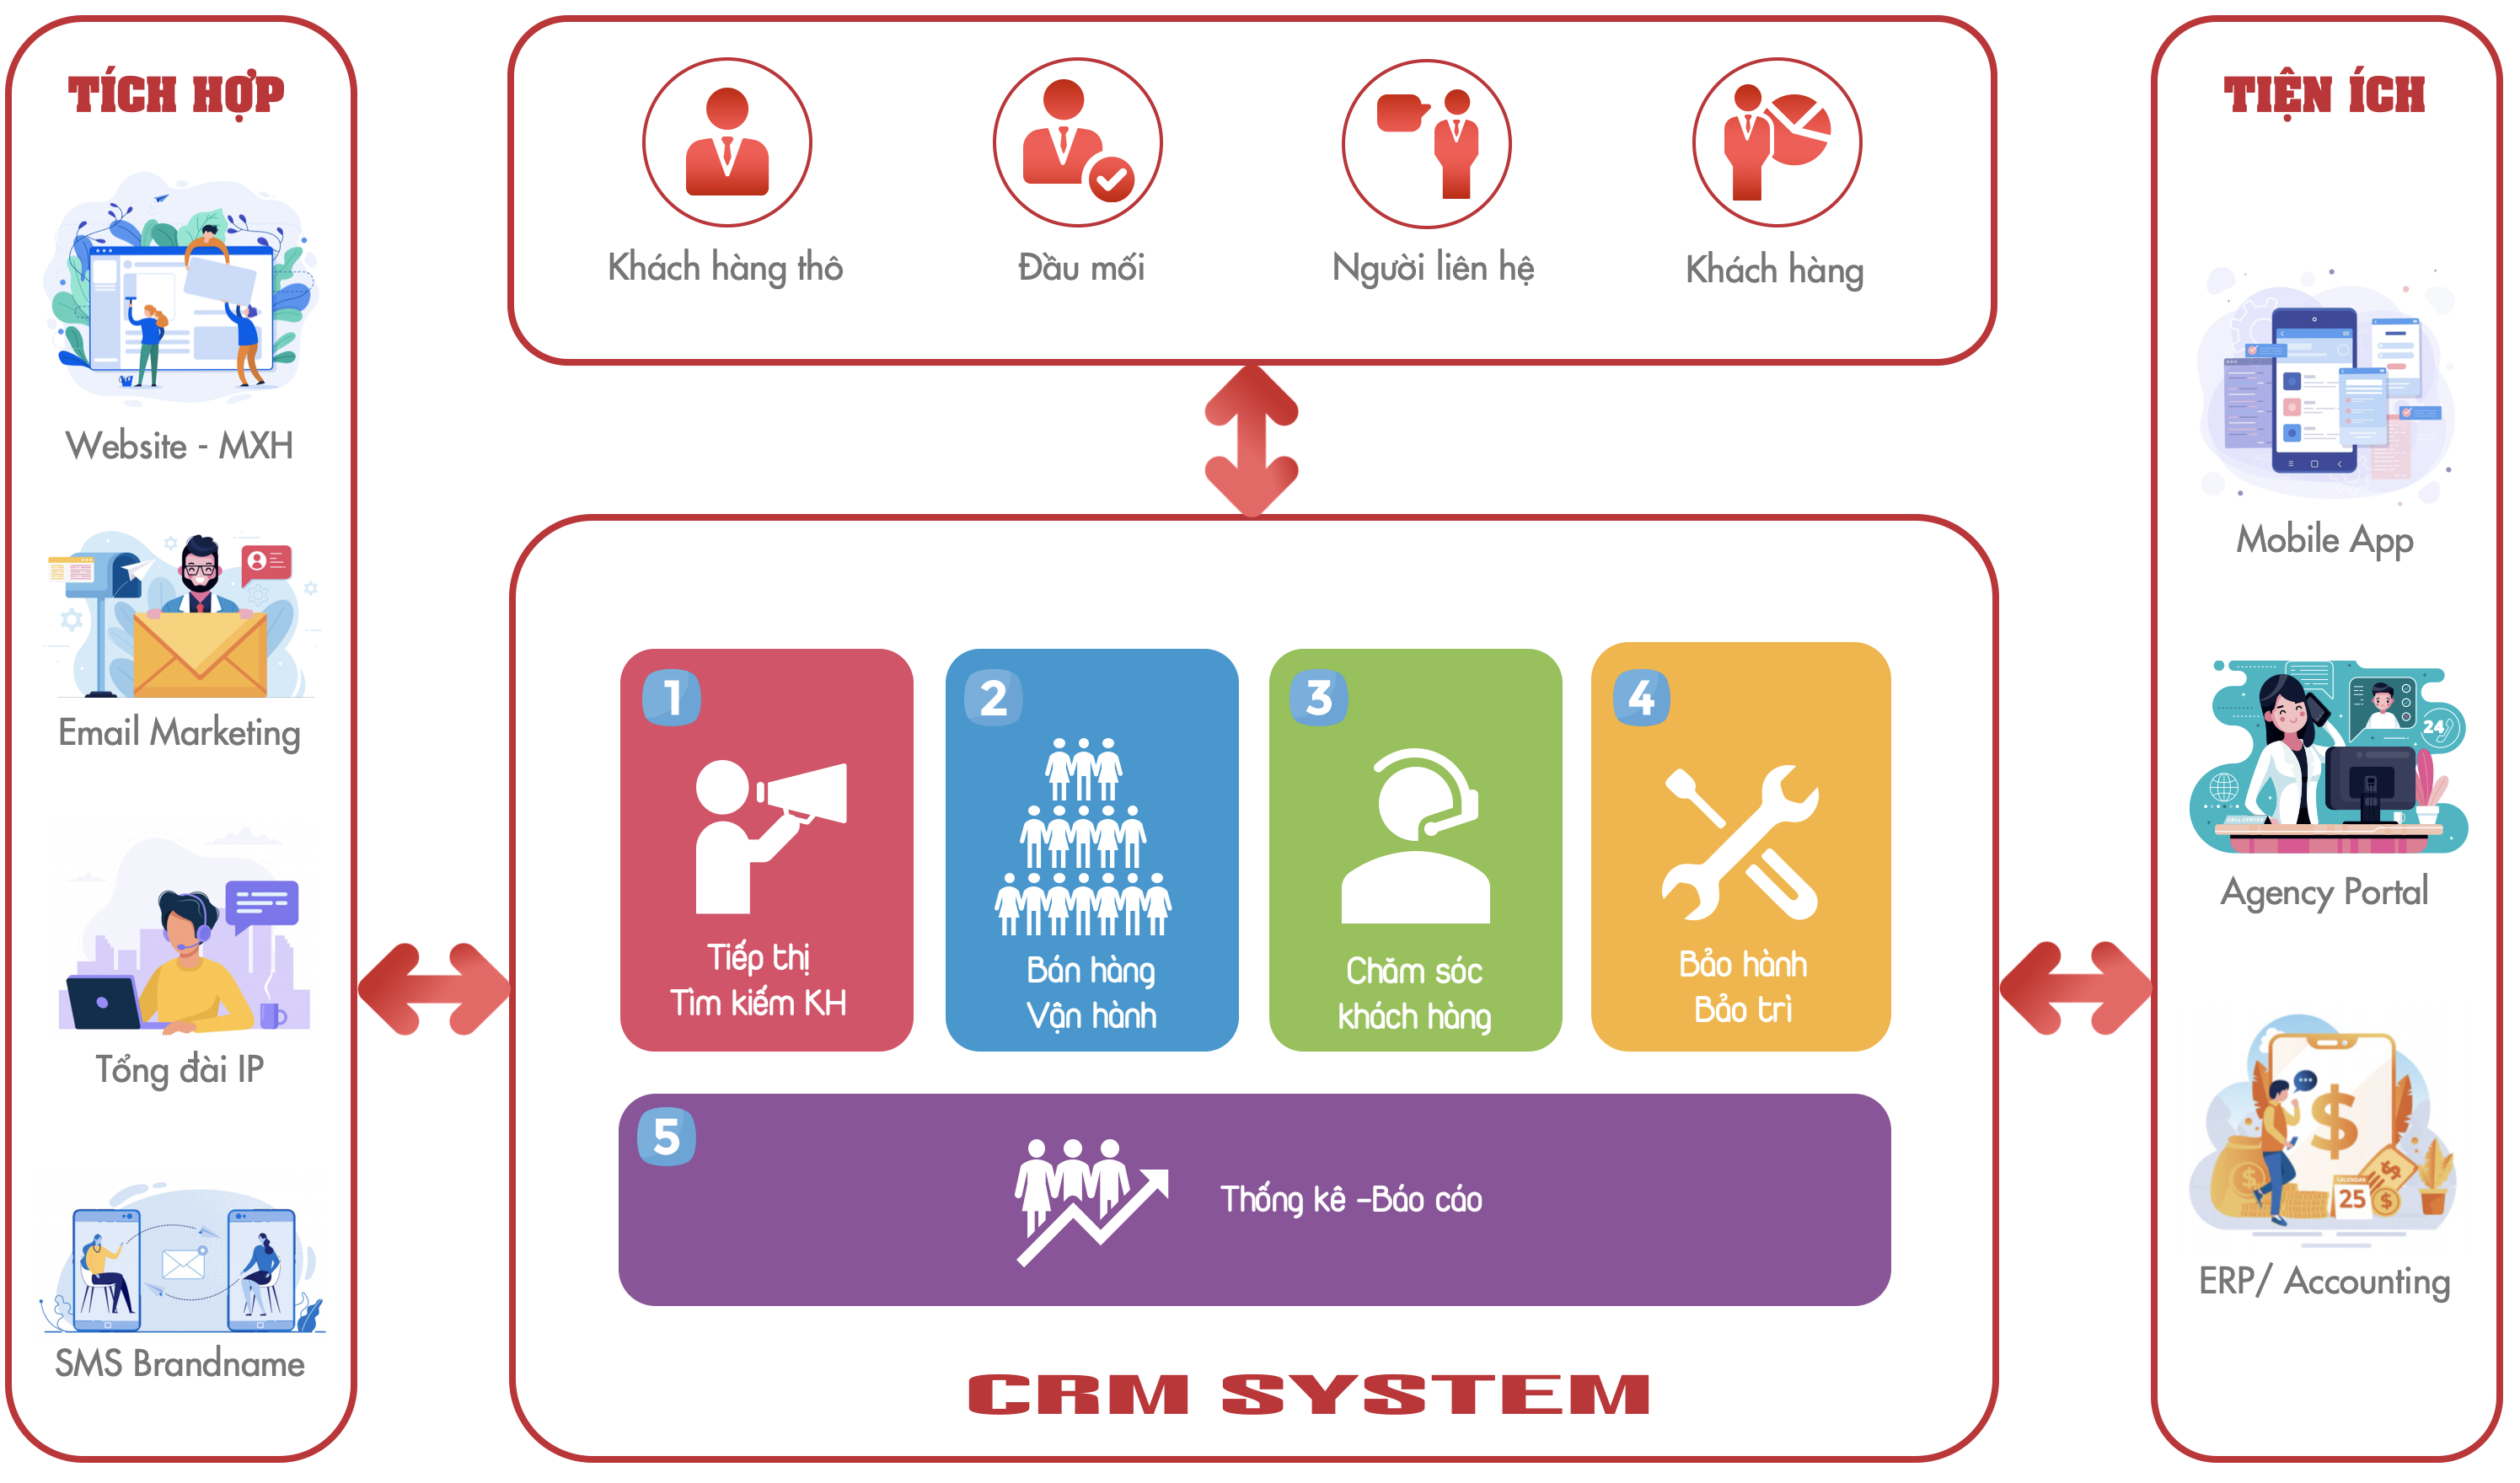 Phần mềm CMR dùng để làm gì?